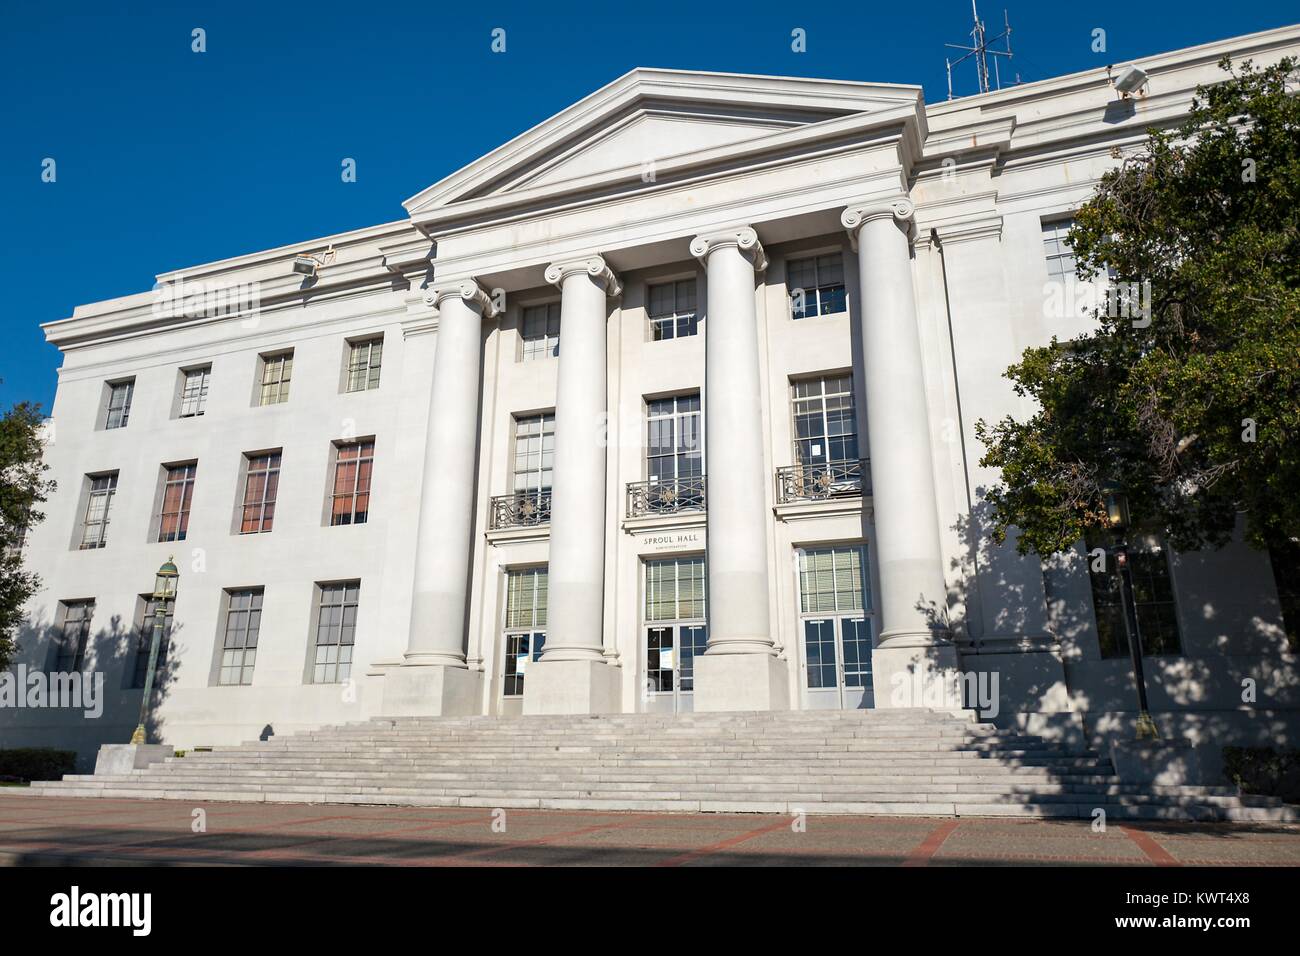 Fassade der Sproul Hall, das Verwaltungsgebäude an der UC Berkeley in Berkeley, Kalifornien, die für Sein das Epizentrum einer Vielzahl von politischen Protestbewegungen, einschließlich der freien Rede Bewegung, Besetzen, Berkeley, und 60er Jahre die Proteste gegen den Vietnamkrieg, 6. Oktober 2017 bekannt ist. () Stockfoto